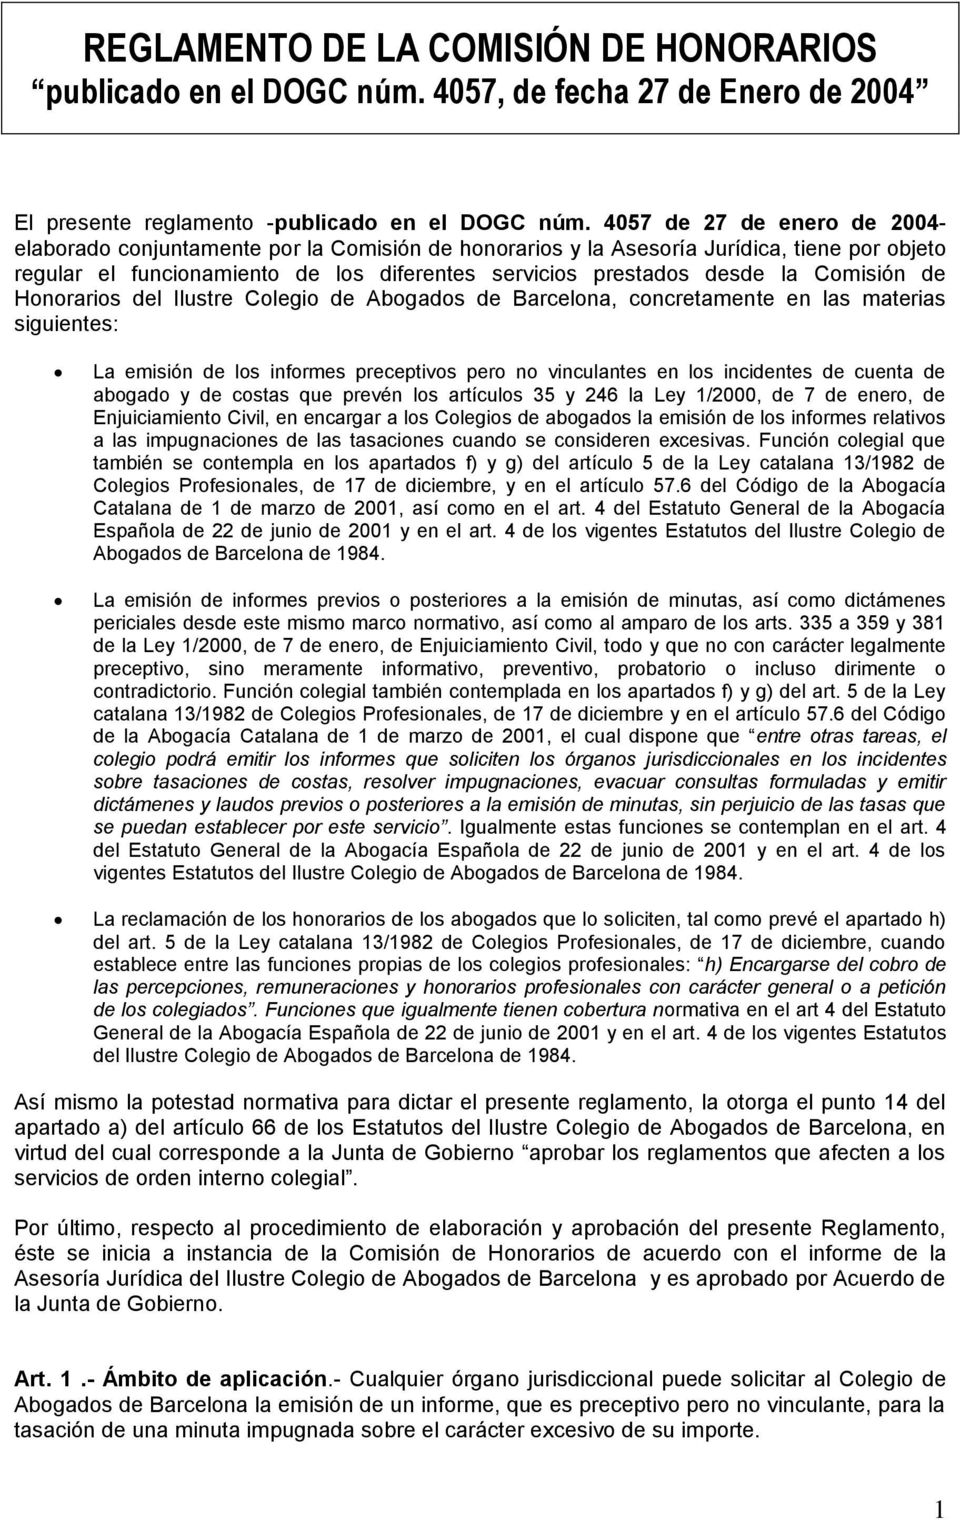 Comisión de Honorarios del Ilustre Colegio de Abogados de Barcelona, concretamente en las materias siguientes: La emisión de los informes preceptivos pero no vinculantes en los incidentes de cuenta